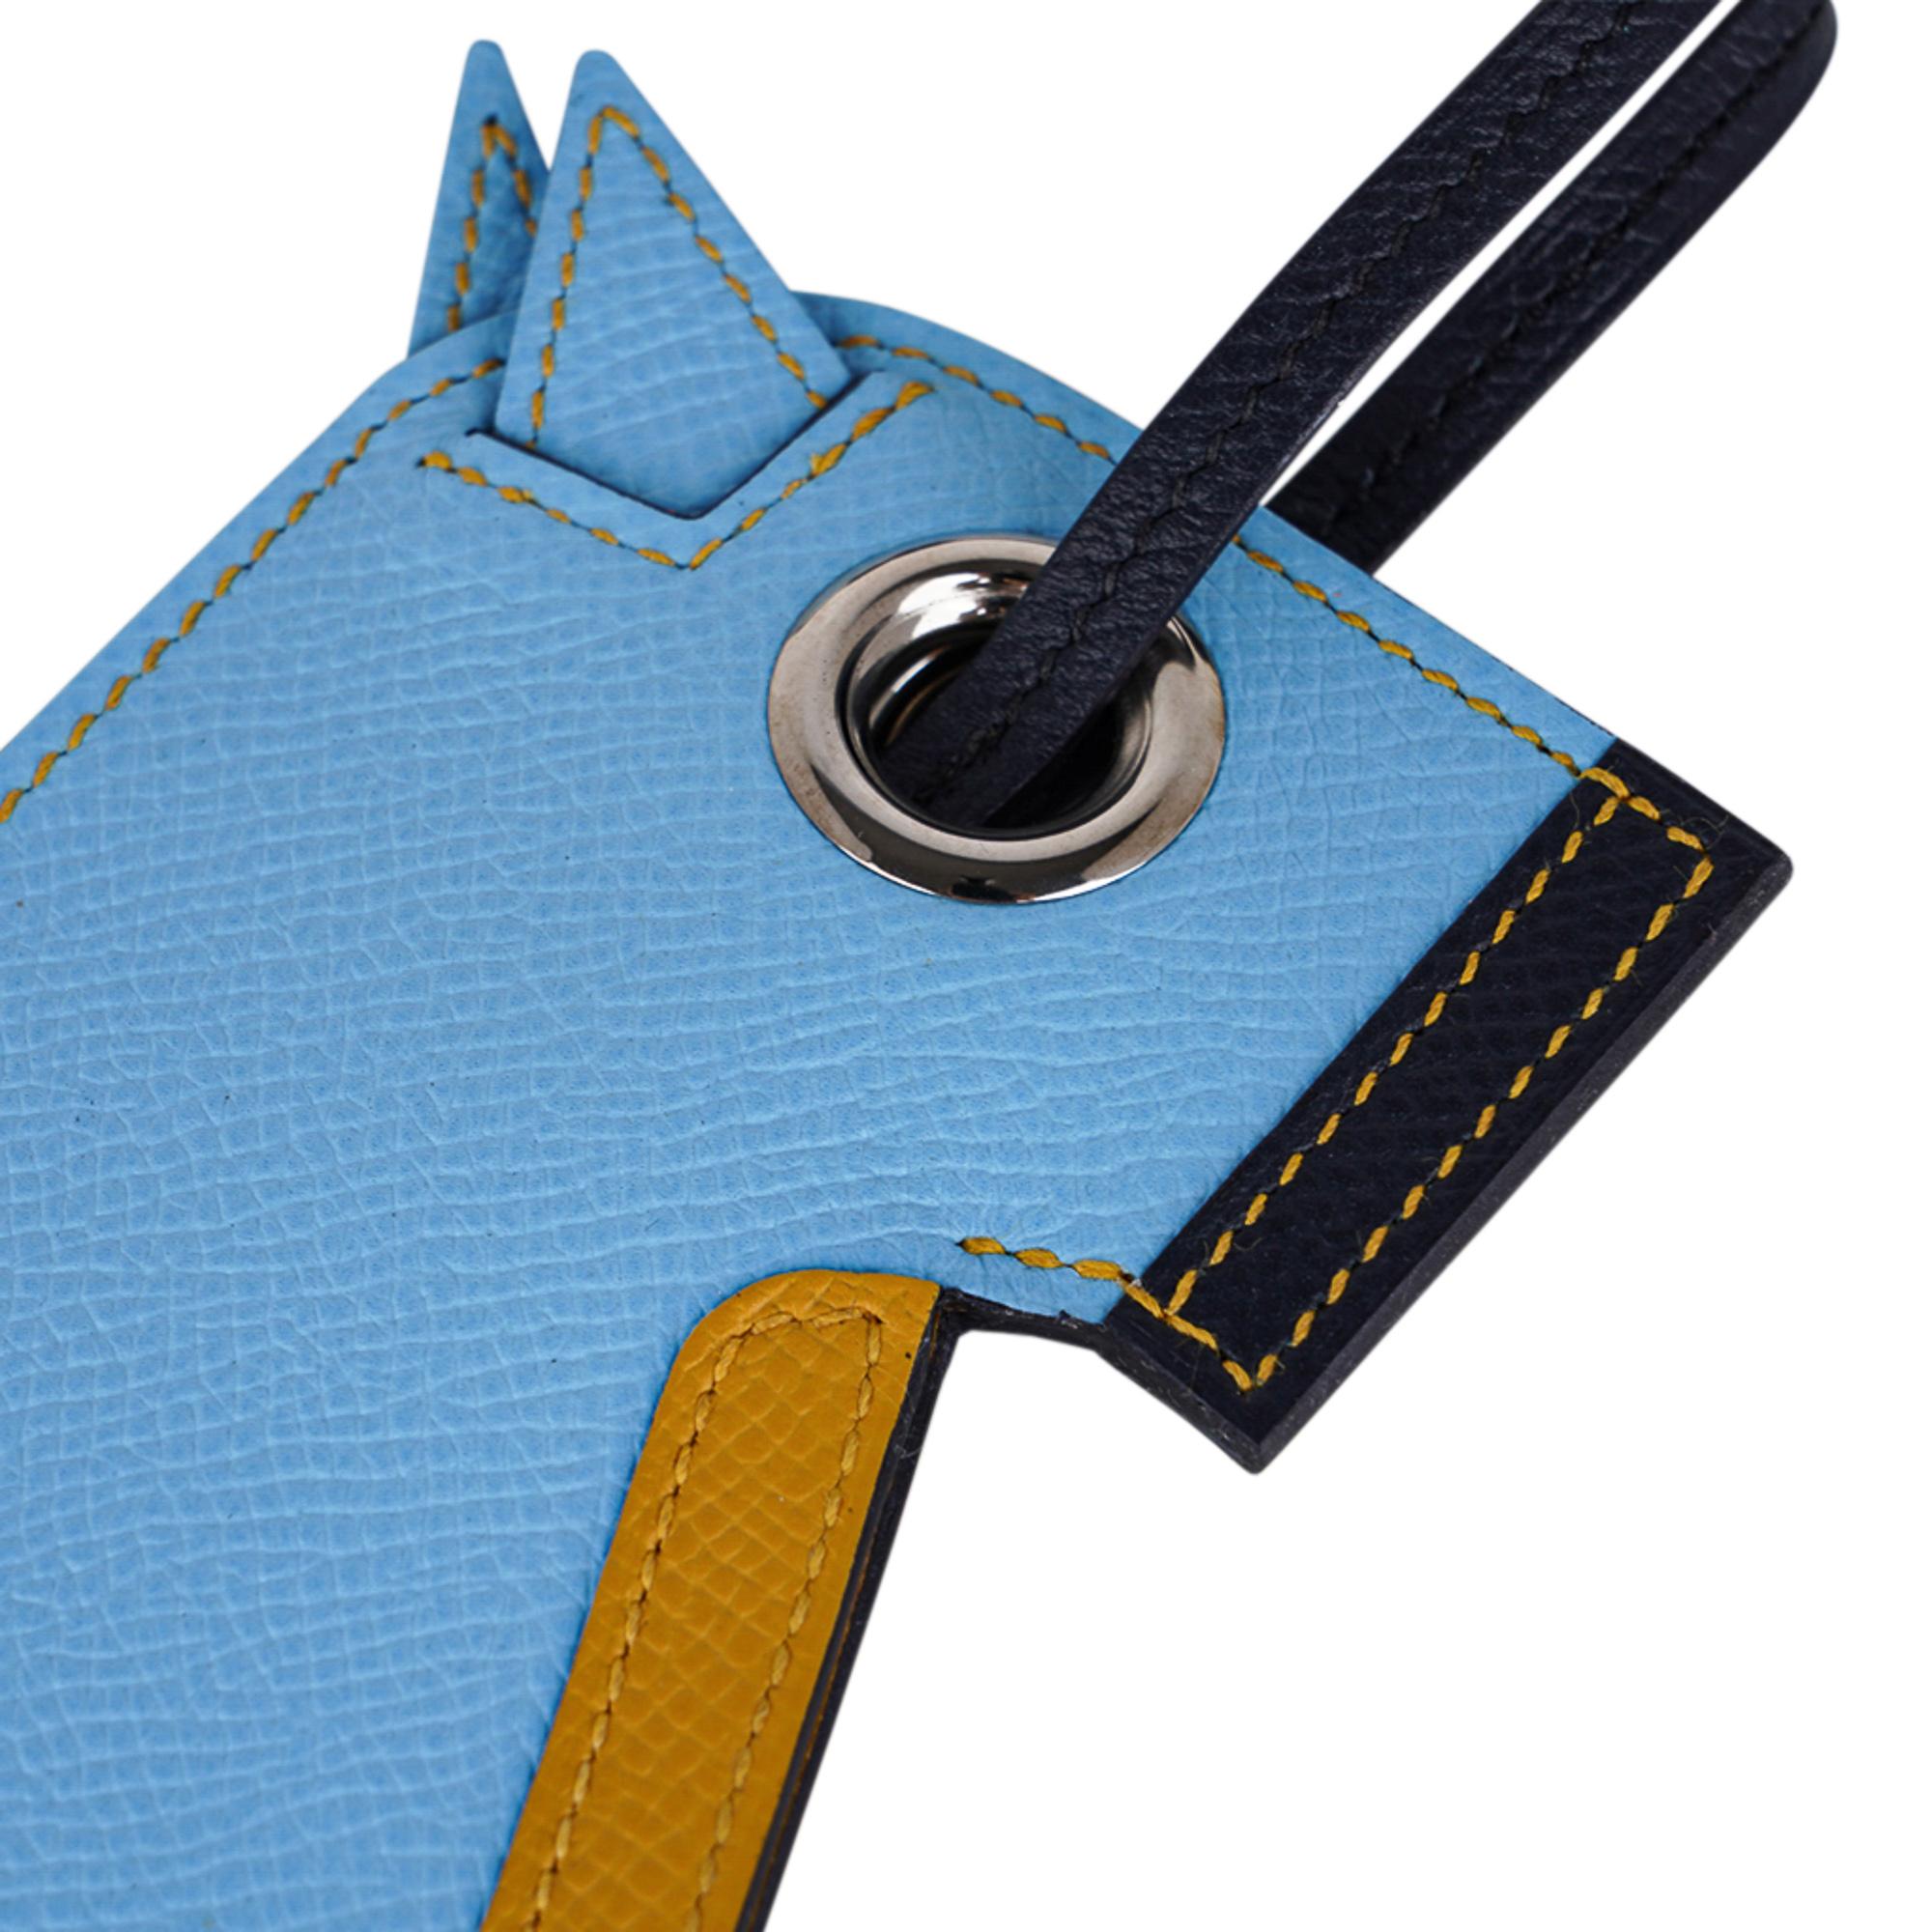 Mightychic offre une garantie d'authenticité du porte-clés Hermès Camail convoité en Bleu Celeste, Jaune Ambre et Bleu Indigo.
Une version moderne de la tête de cheval, fabriquée en cuir d'Epsom, avec un porte-clés caché.
Charmante et enjouée, elle